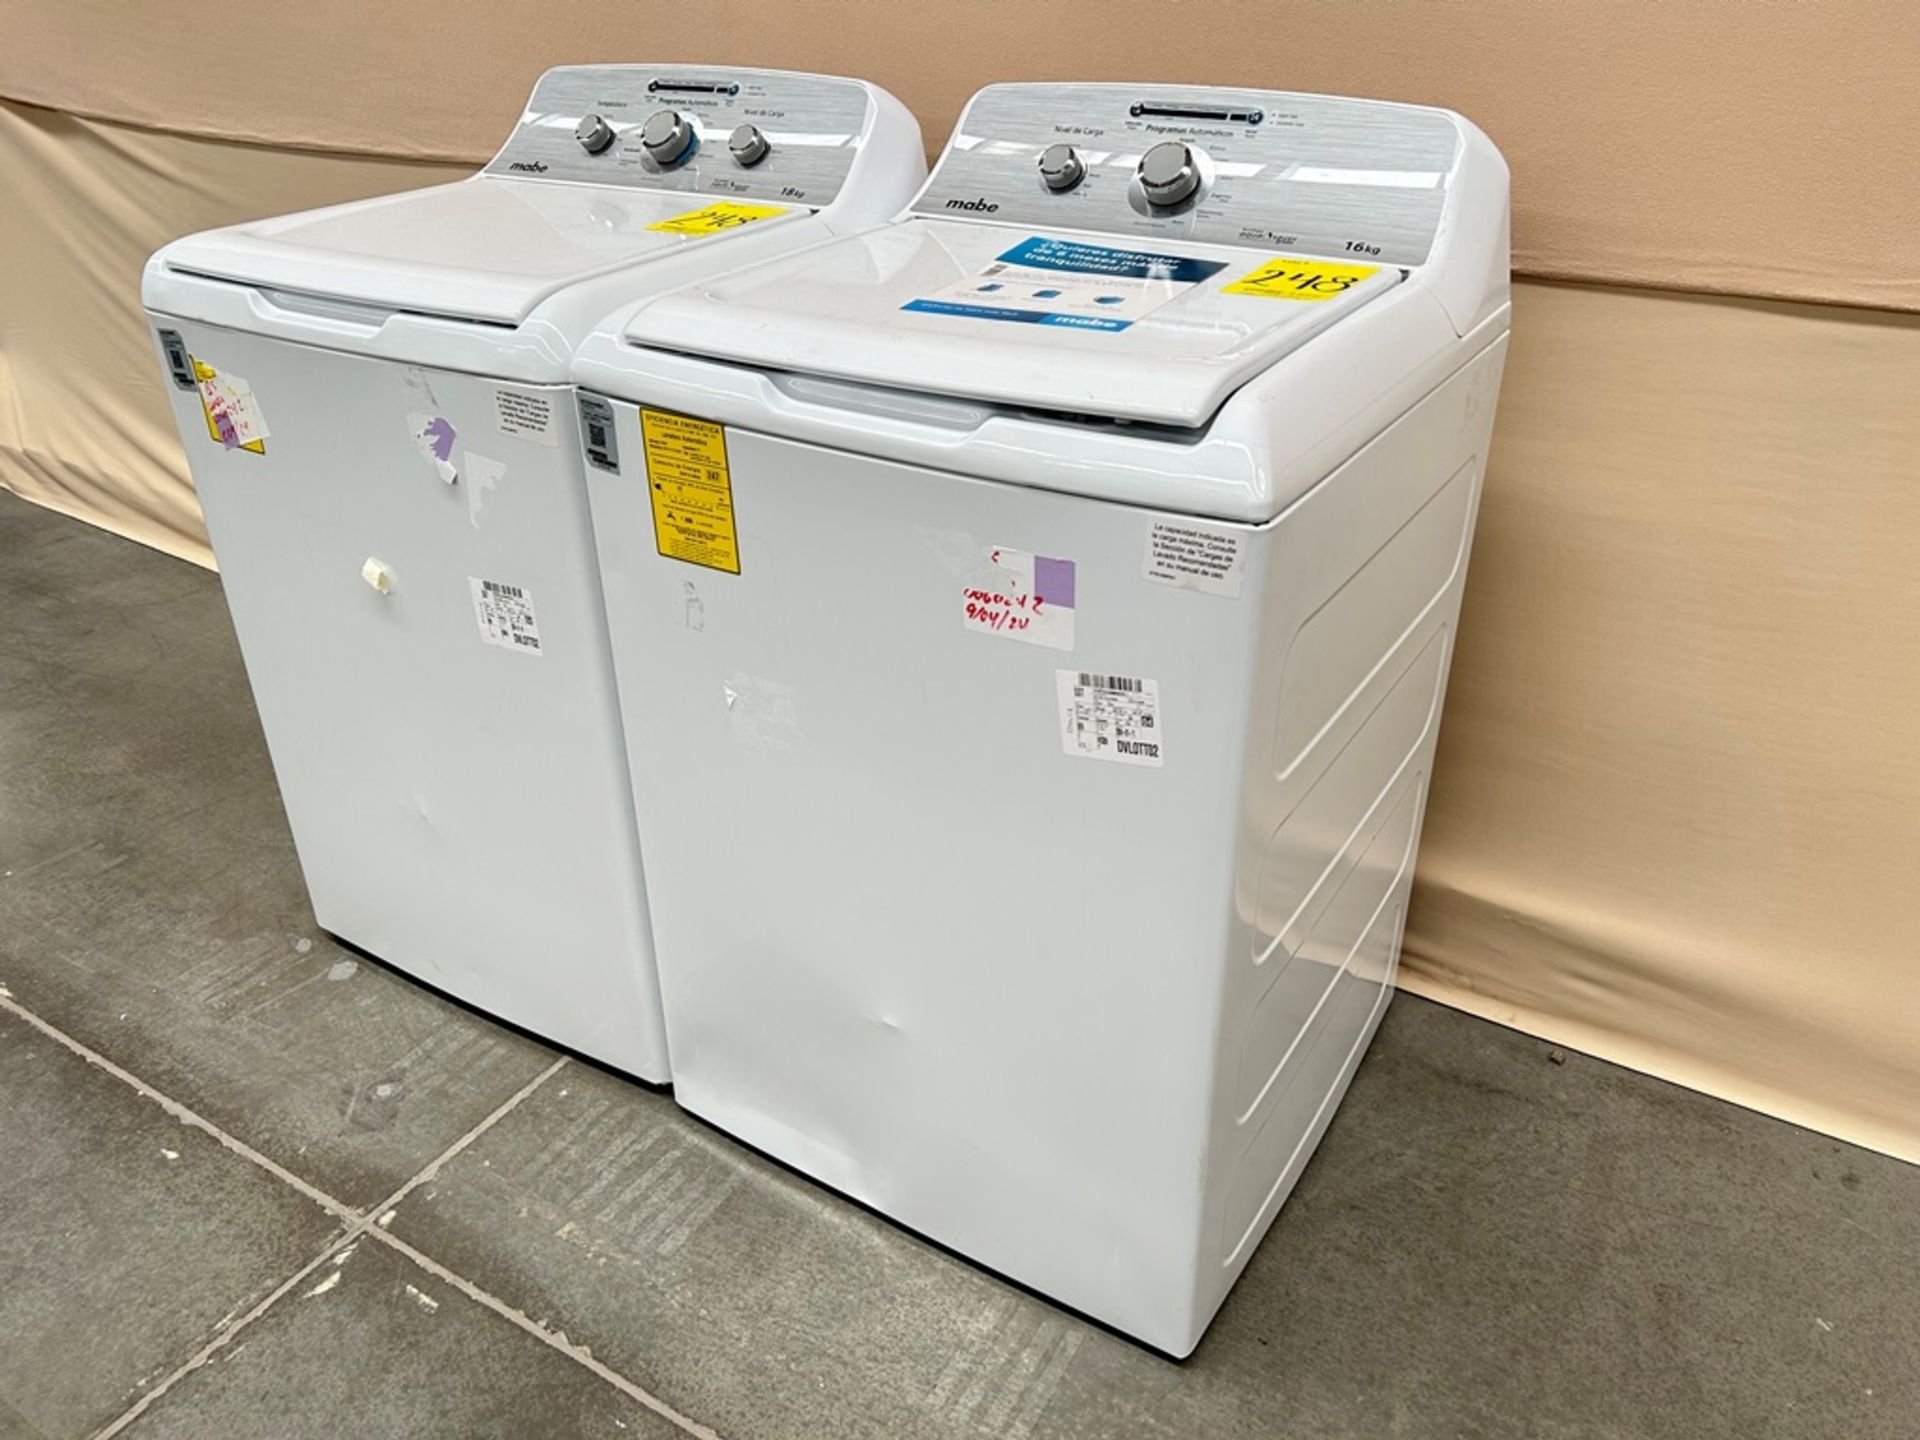 Lote de 2 lavadoras contiene: 1 Lavadora de 18 KG Marca MABE, Modelo LMA78113CBAB01, Serie S91112, - Image 3 of 6